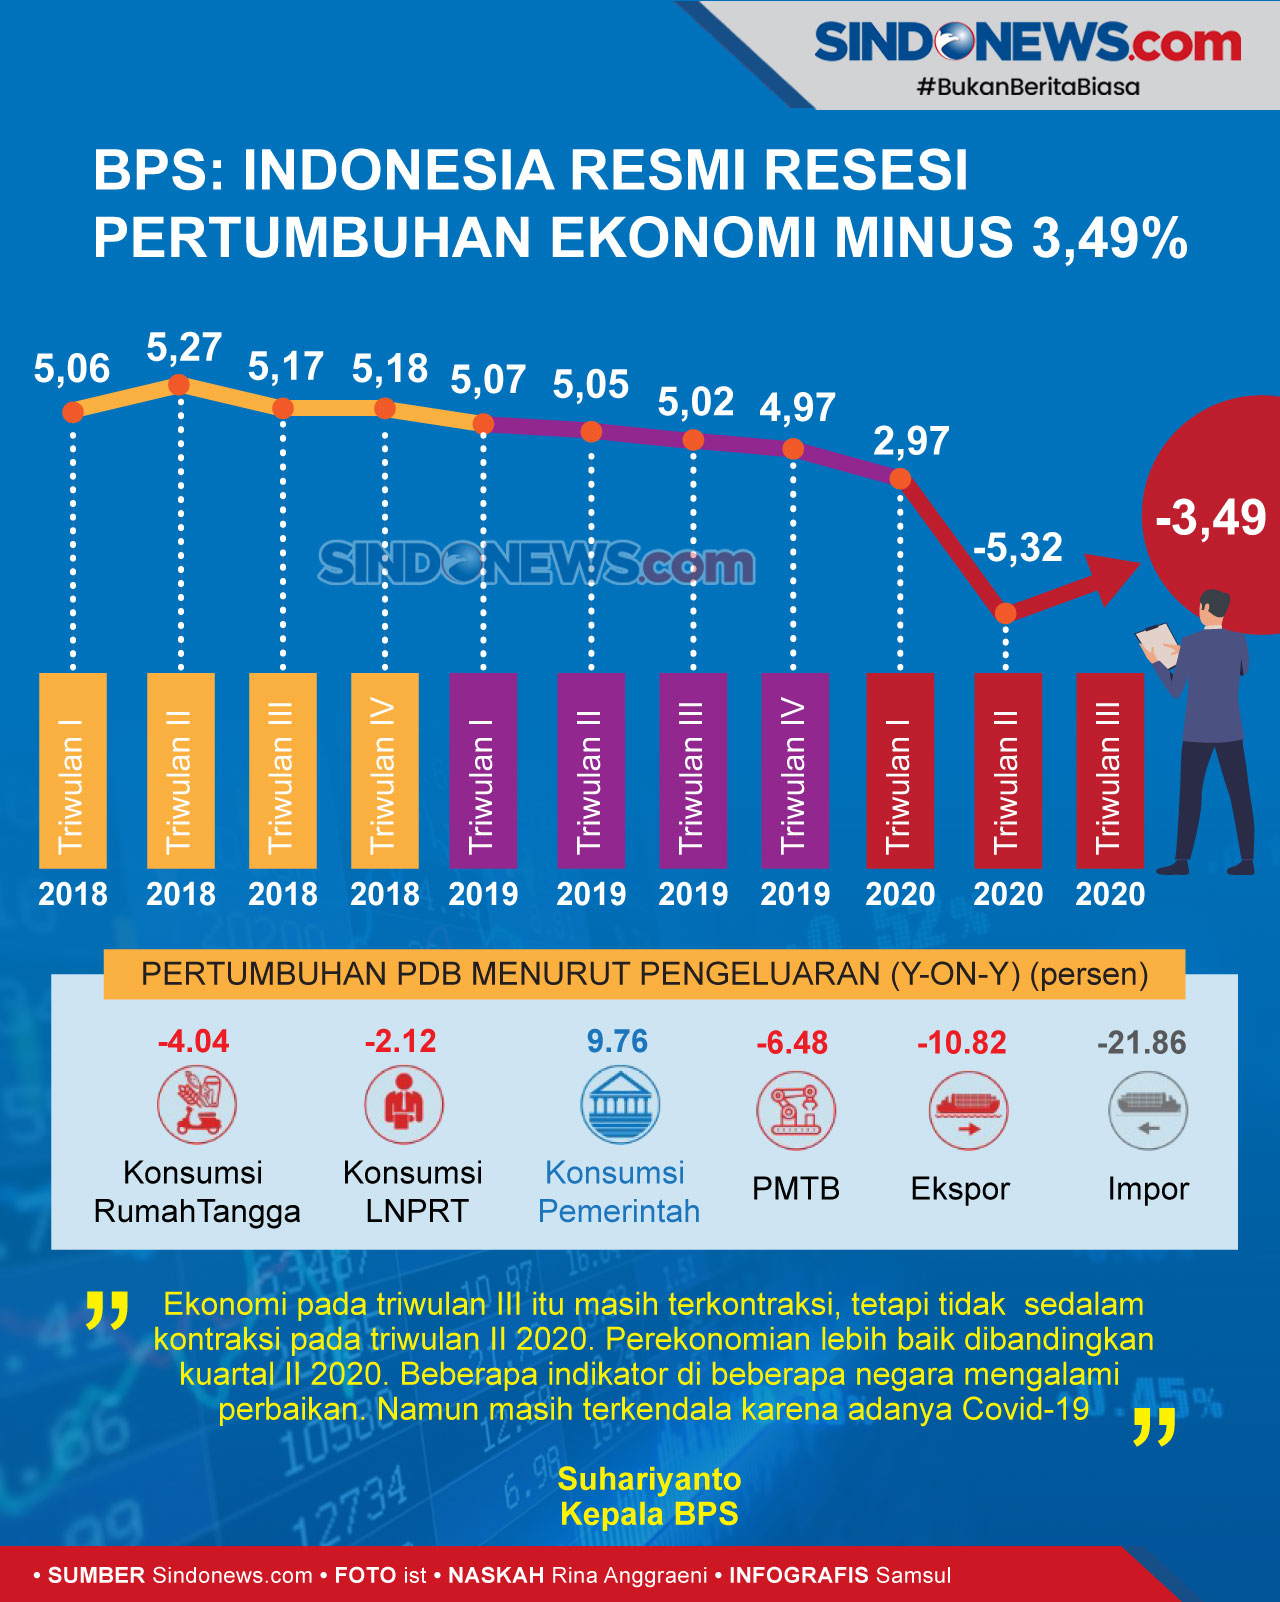 BPS: Indonesia Resmi Resesi, Pertumbuhan Ekonomi Minus 3,49%